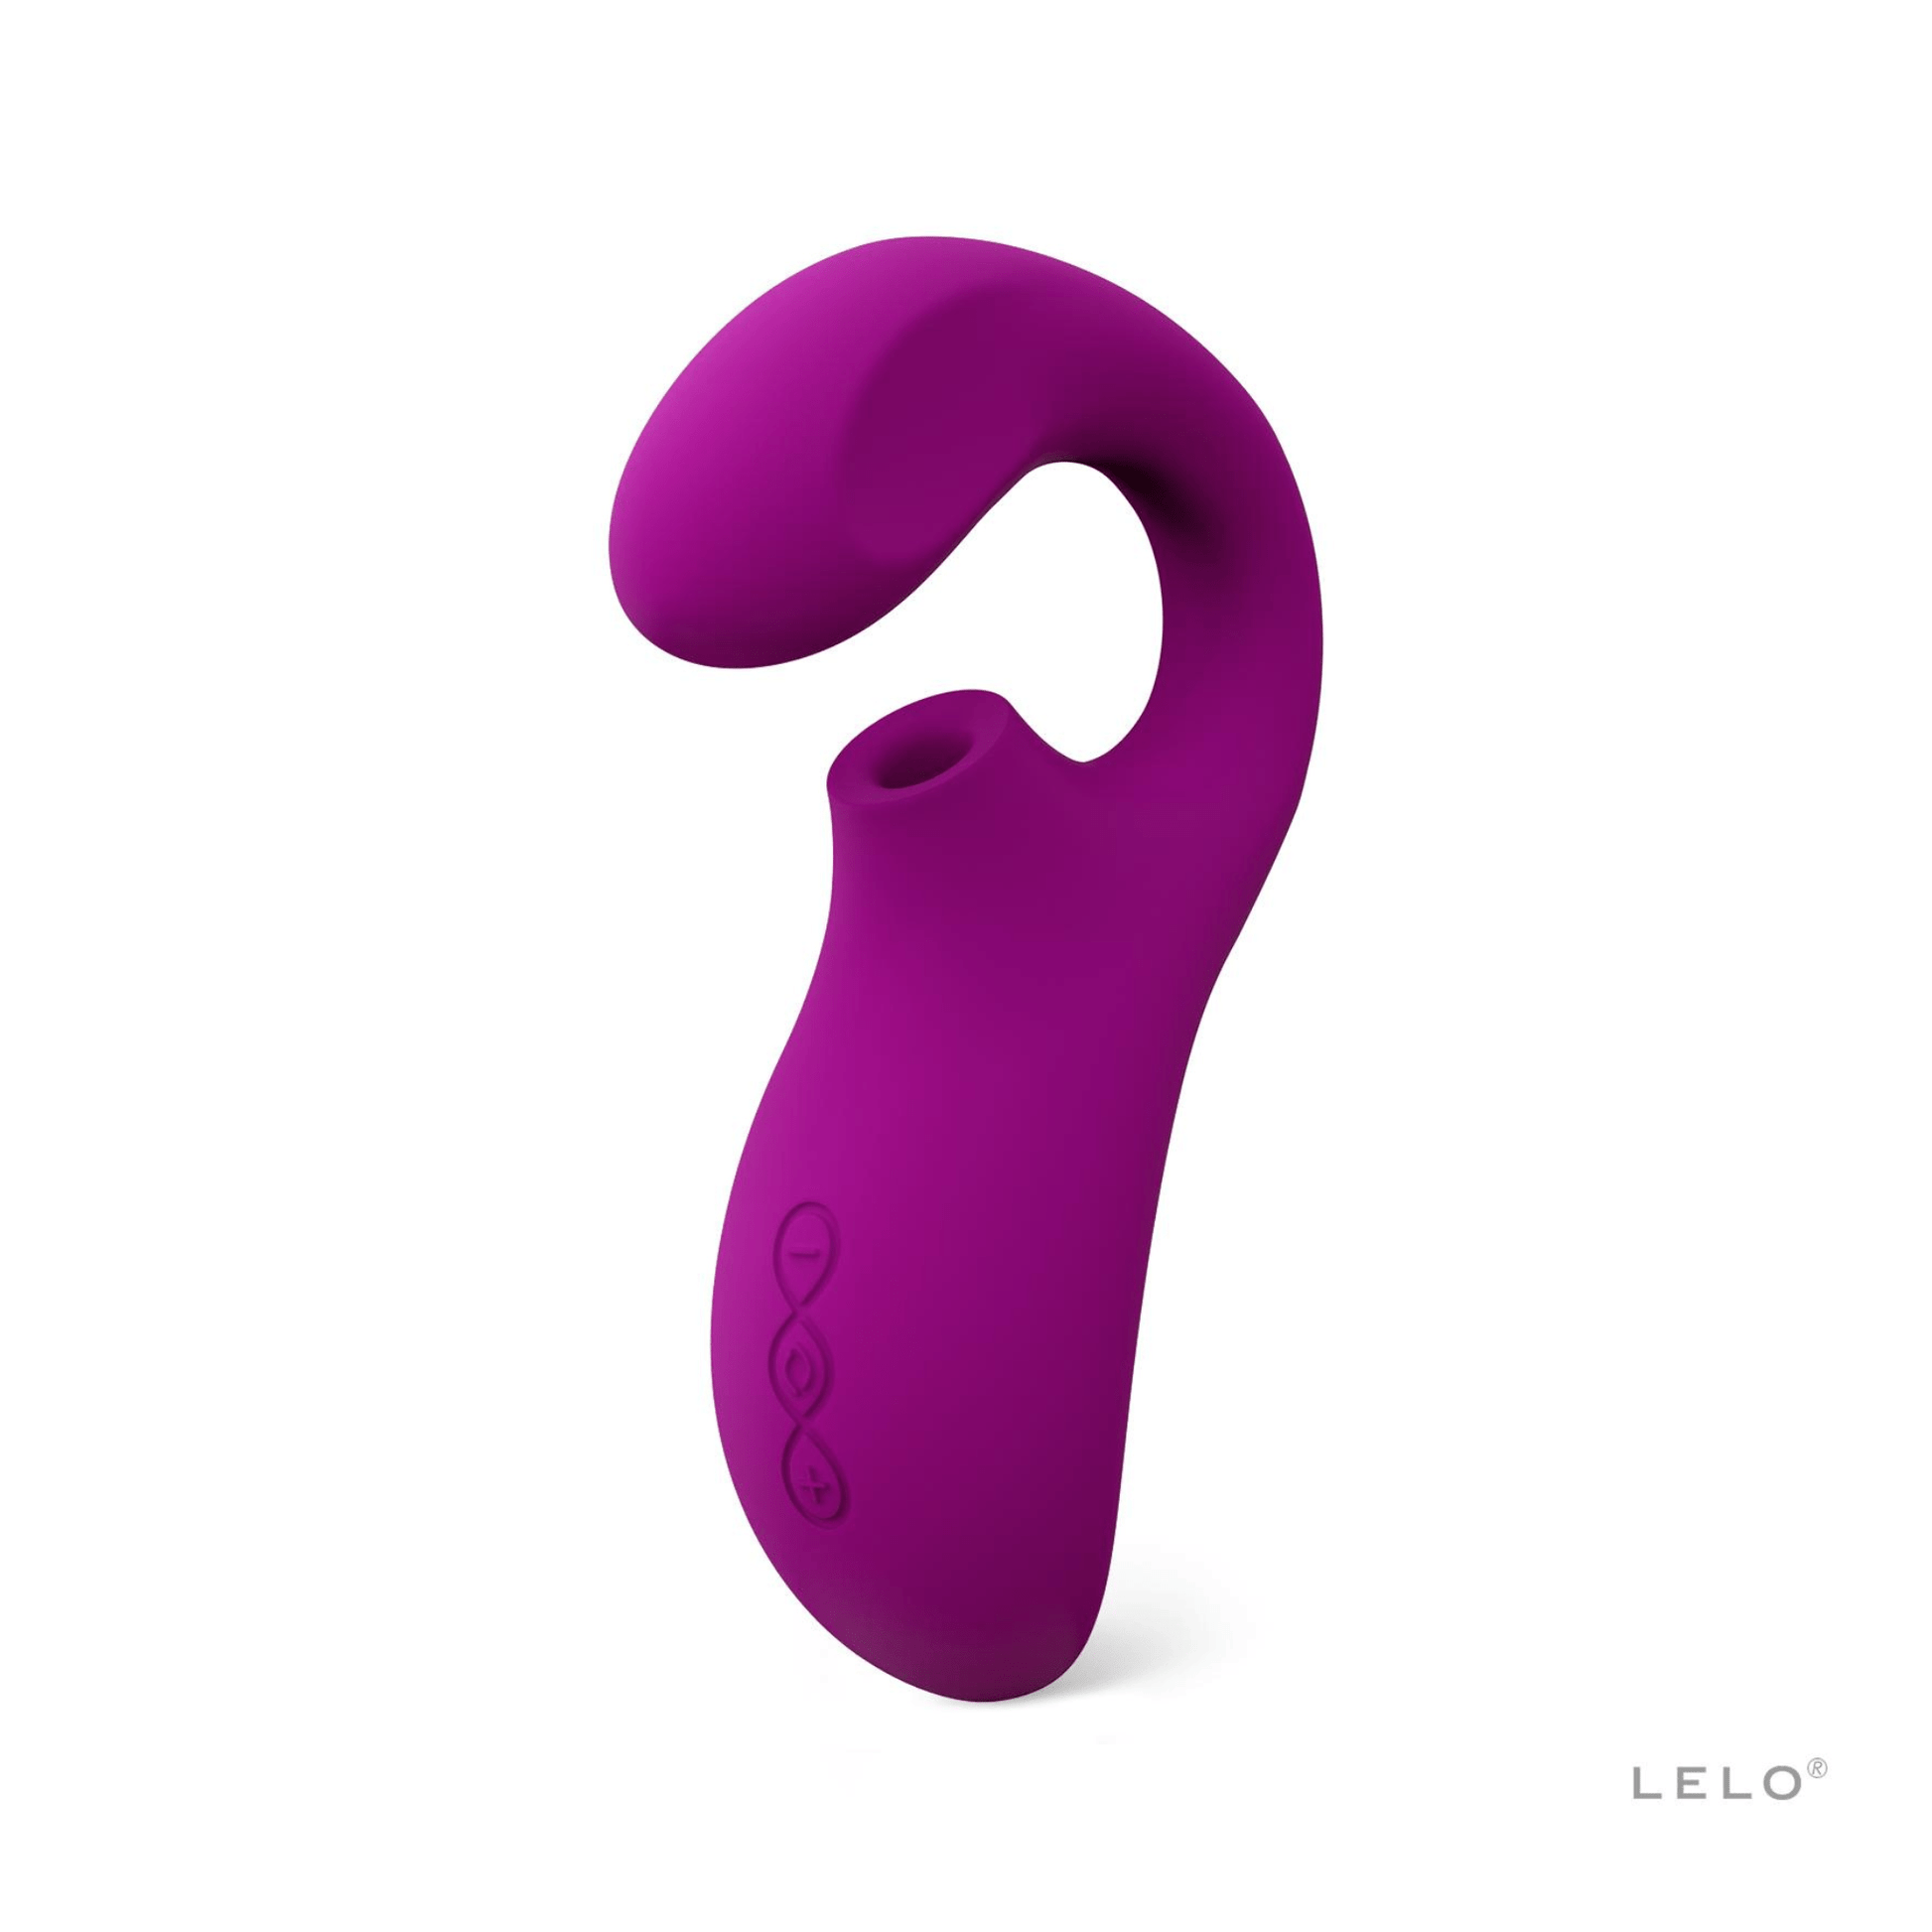 Stimulateur Enigma de Lelo en violet vibrant, accessoire de plaisir féminin haut de gamme pour une stimulation double et intense, vendu exclusivement sur OhMyGodz.fr